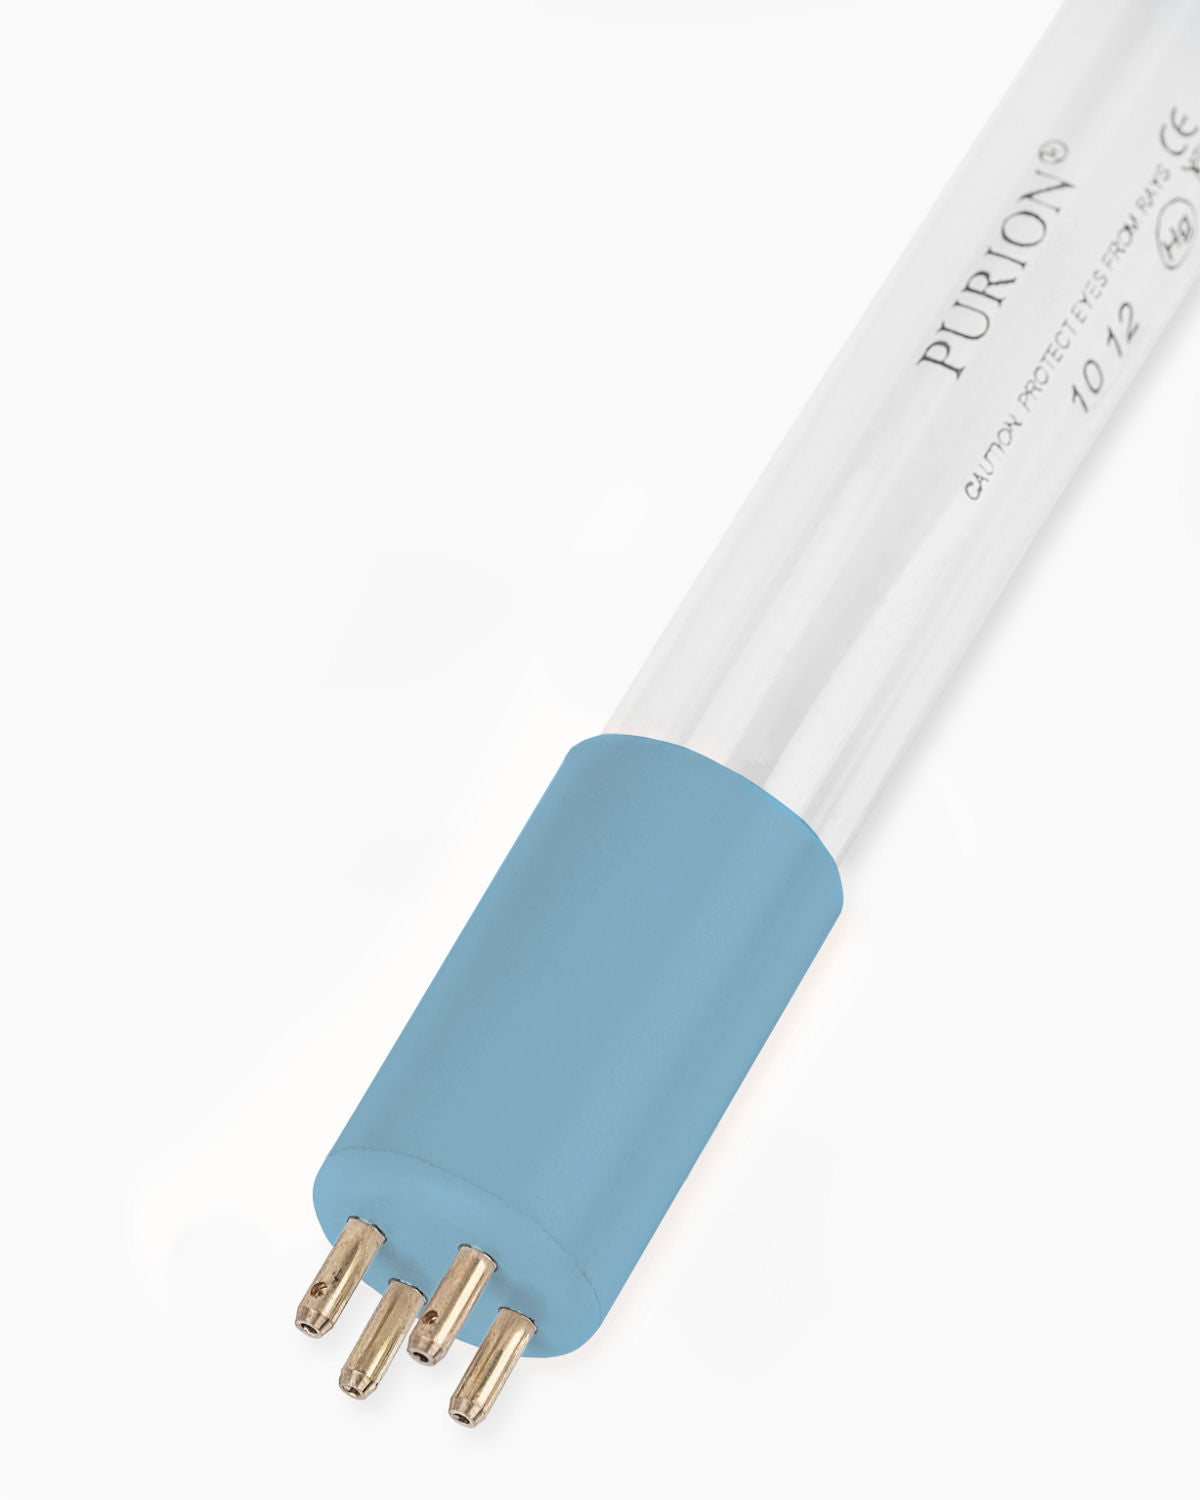 Eine blaue Lichtröhre auf weißem Hintergrund, verstärkt durch die PURION UV-A Lampe der PURION GmbH.